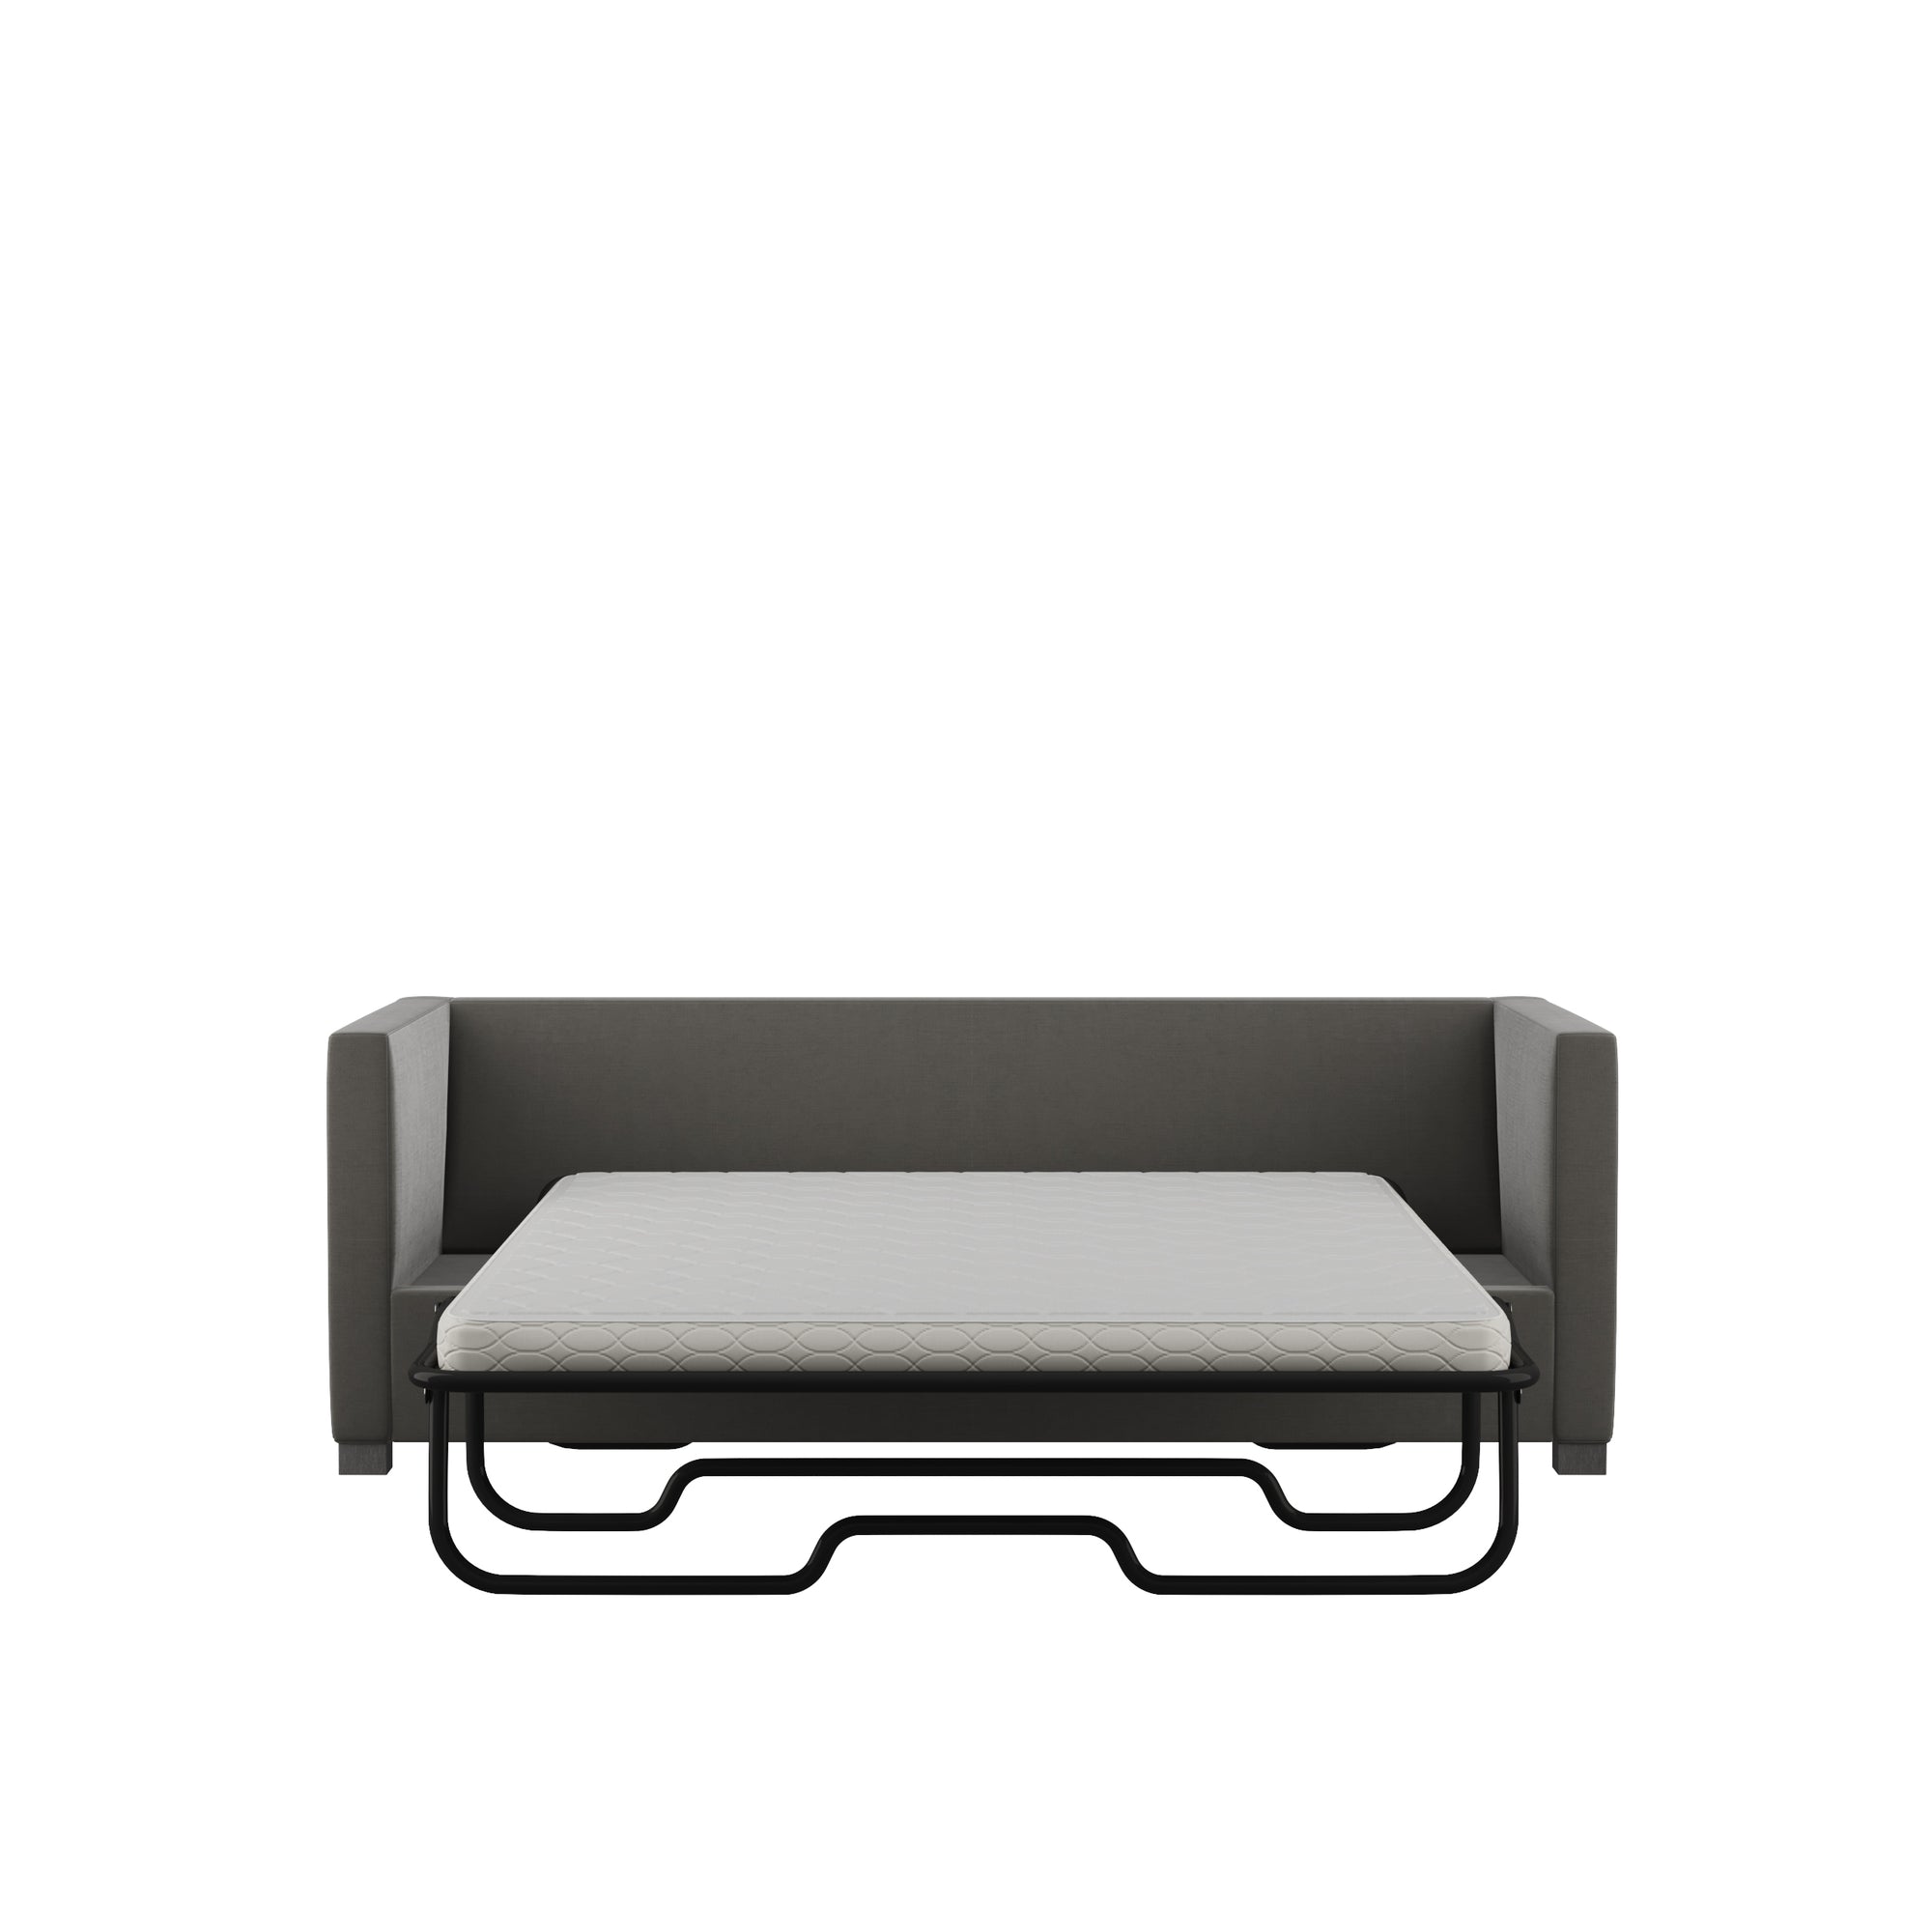 Madison Sleeper Sofa - Graphite Plush Velvet